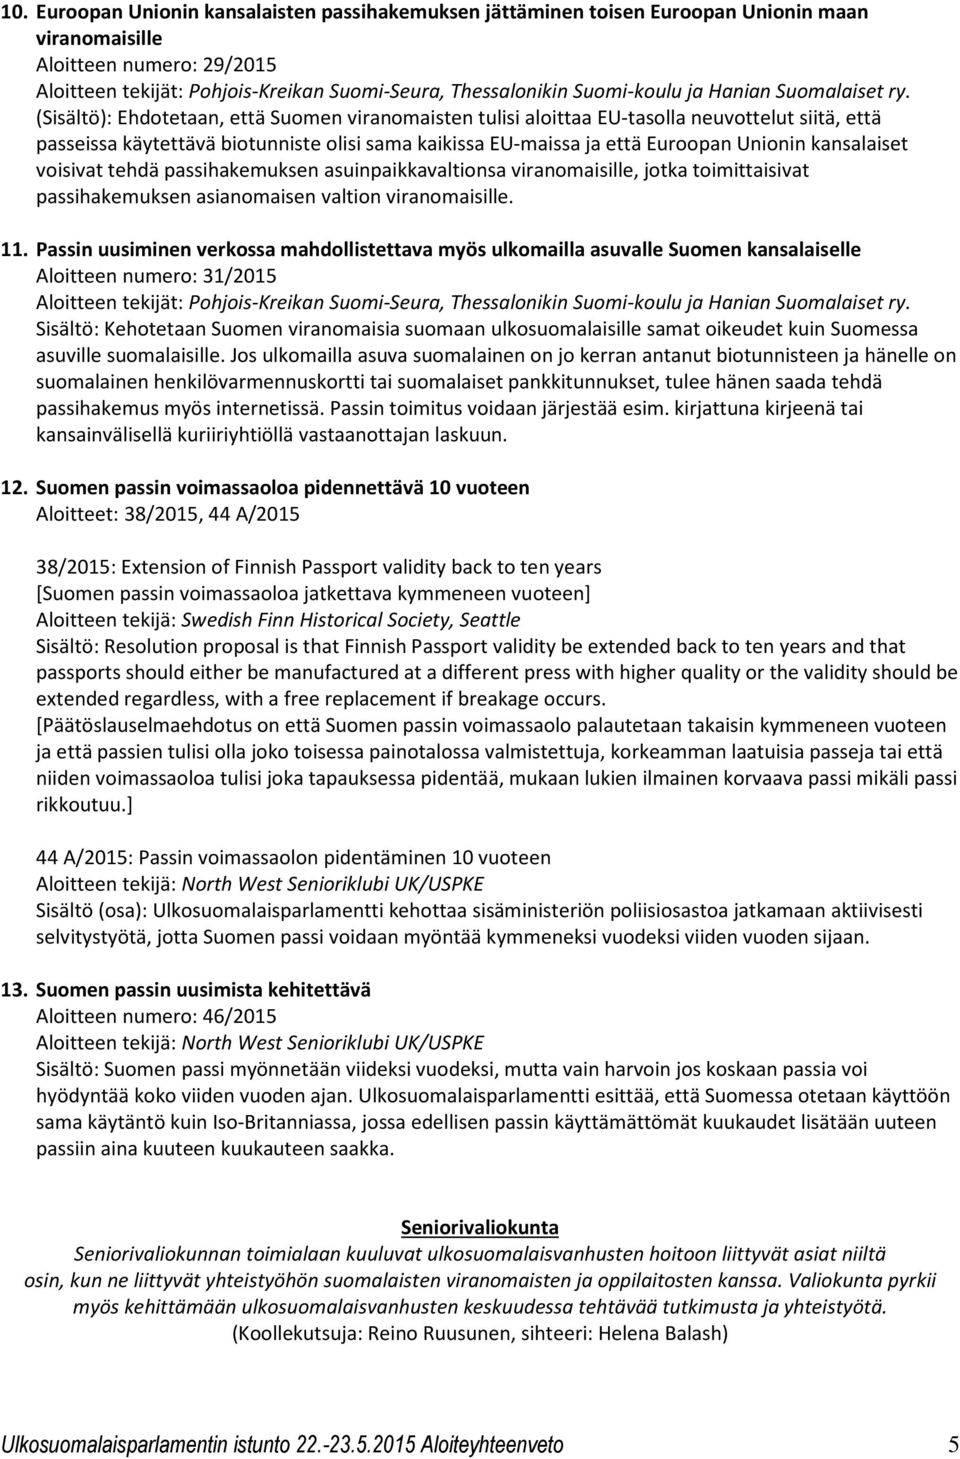 viranomaisille, jotka toimittaisivat passihakemuksen asianomaisen valtion viranomaisille. 11.